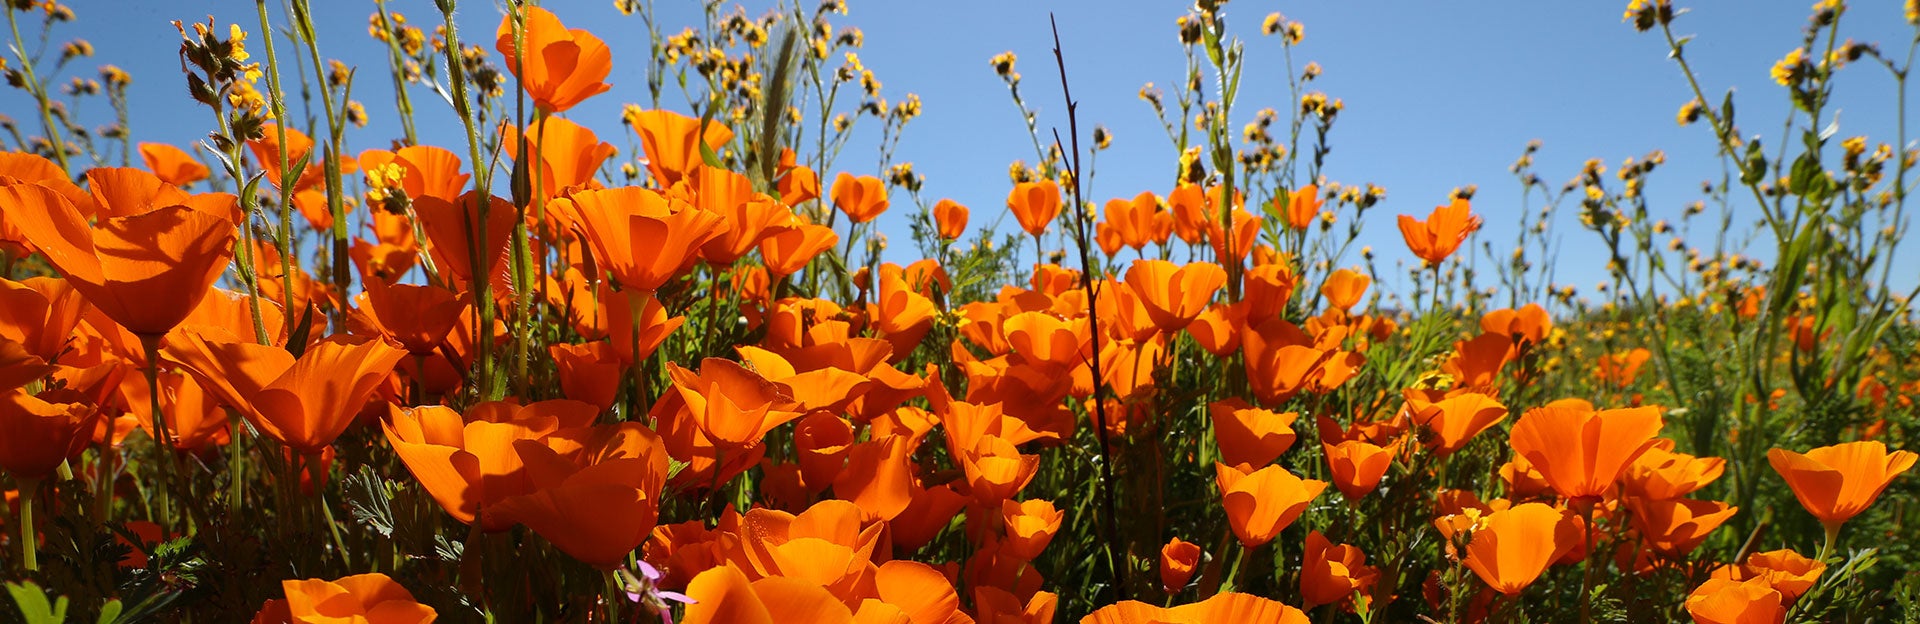 Orange California Poppies